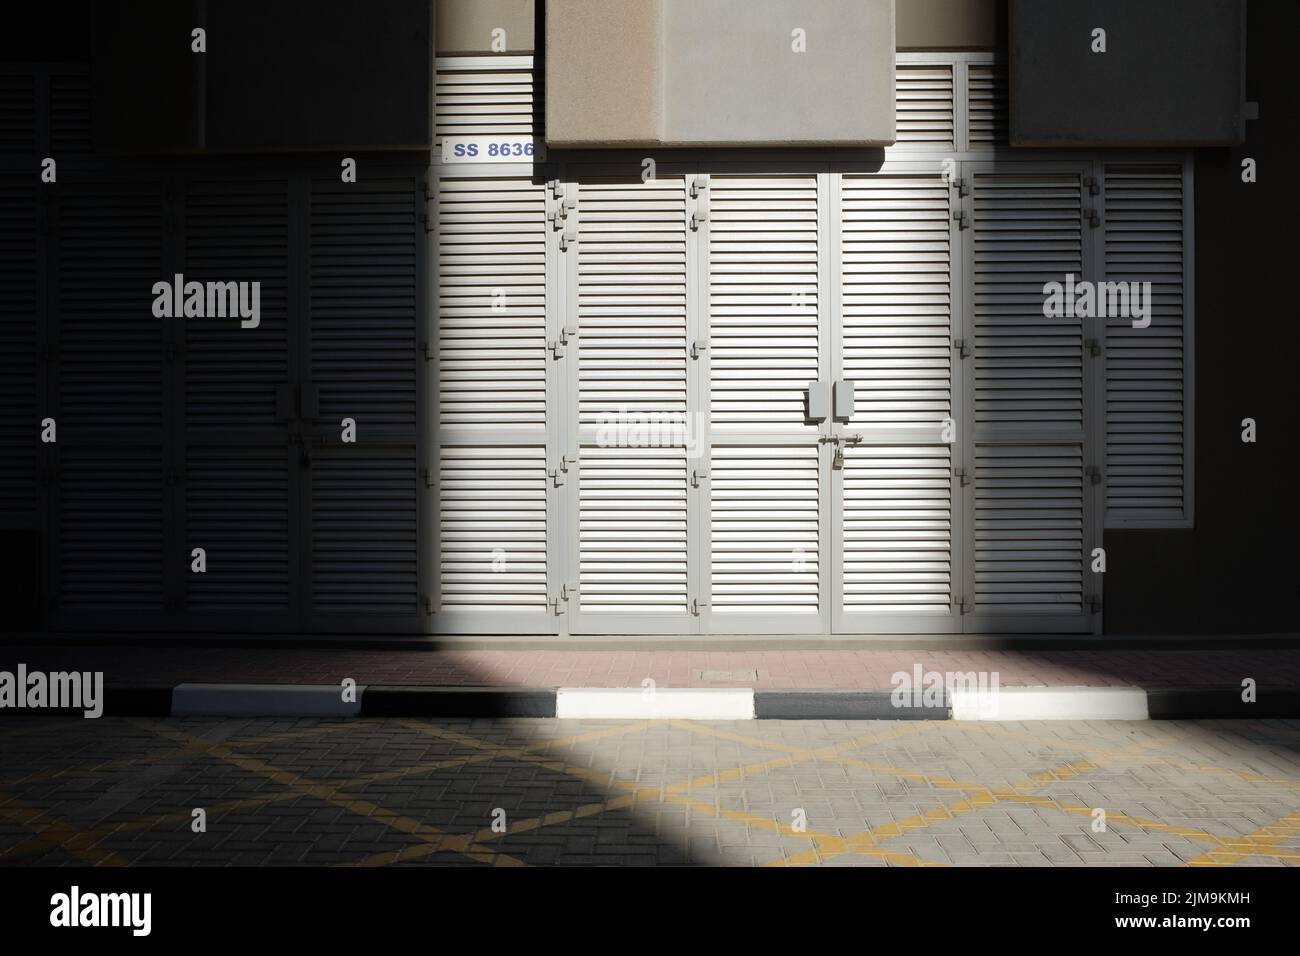 Un fragment de lumière du soleil touche des portes à persiennes en aluminium gris à l'extérieur d'un bâtiment urbain à Dubaï, aux Émirats arabes Unis. Banque D'Images